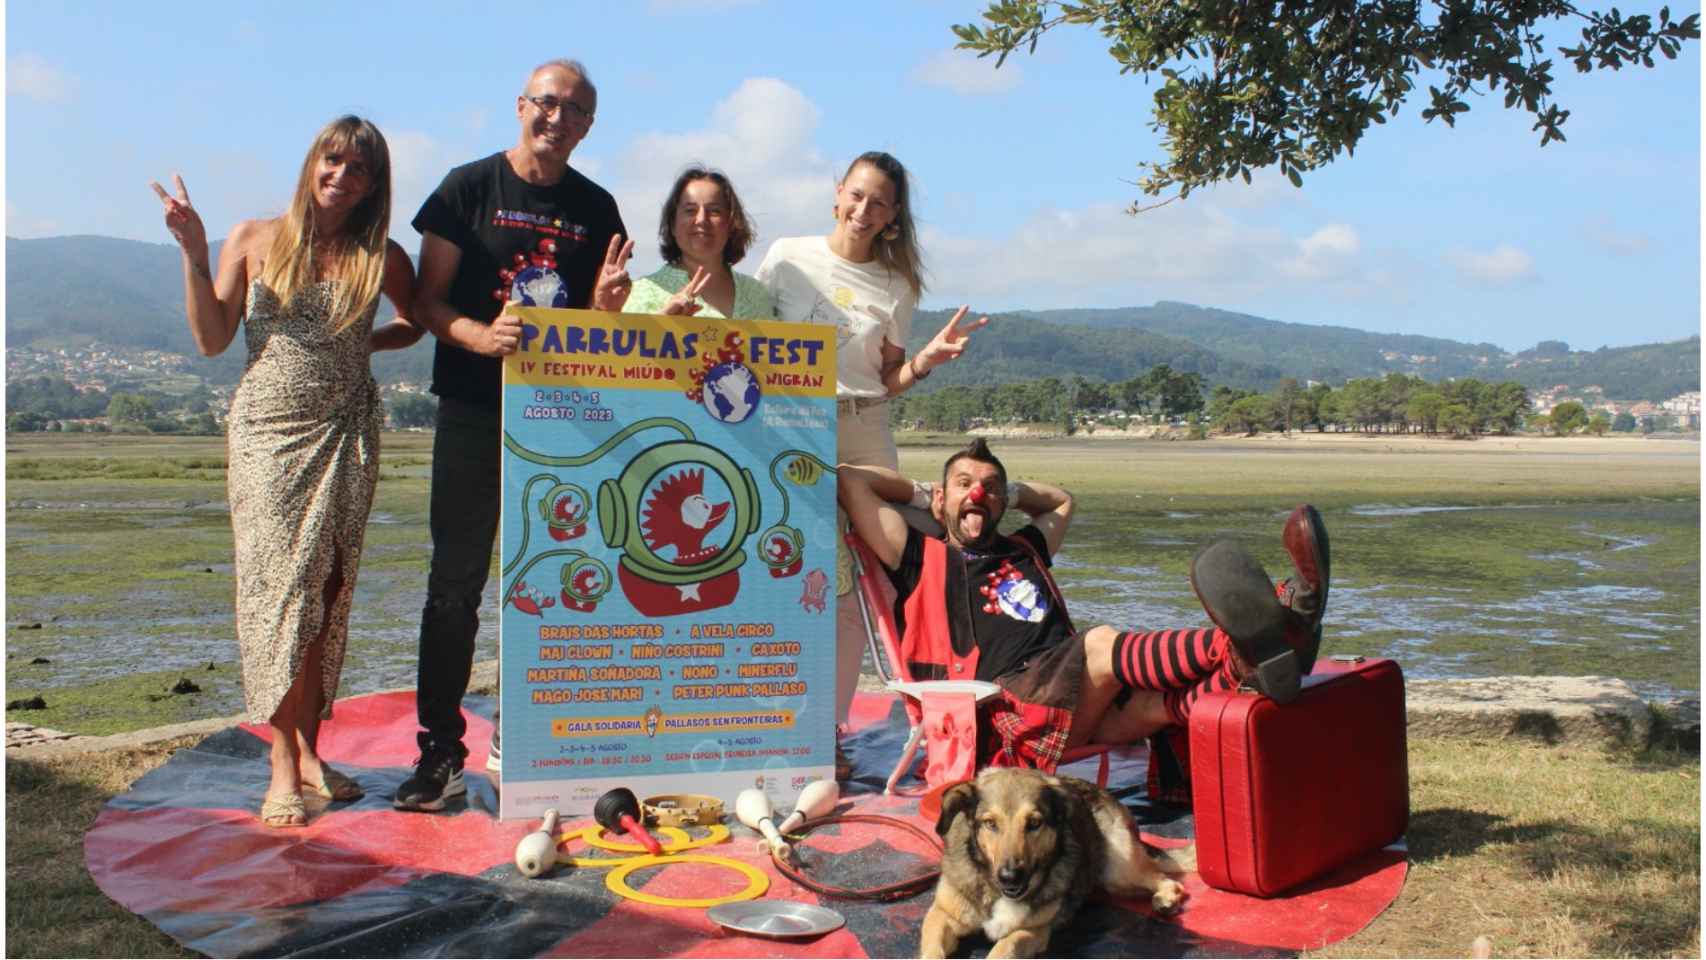 Presentación del Parrulas Fest